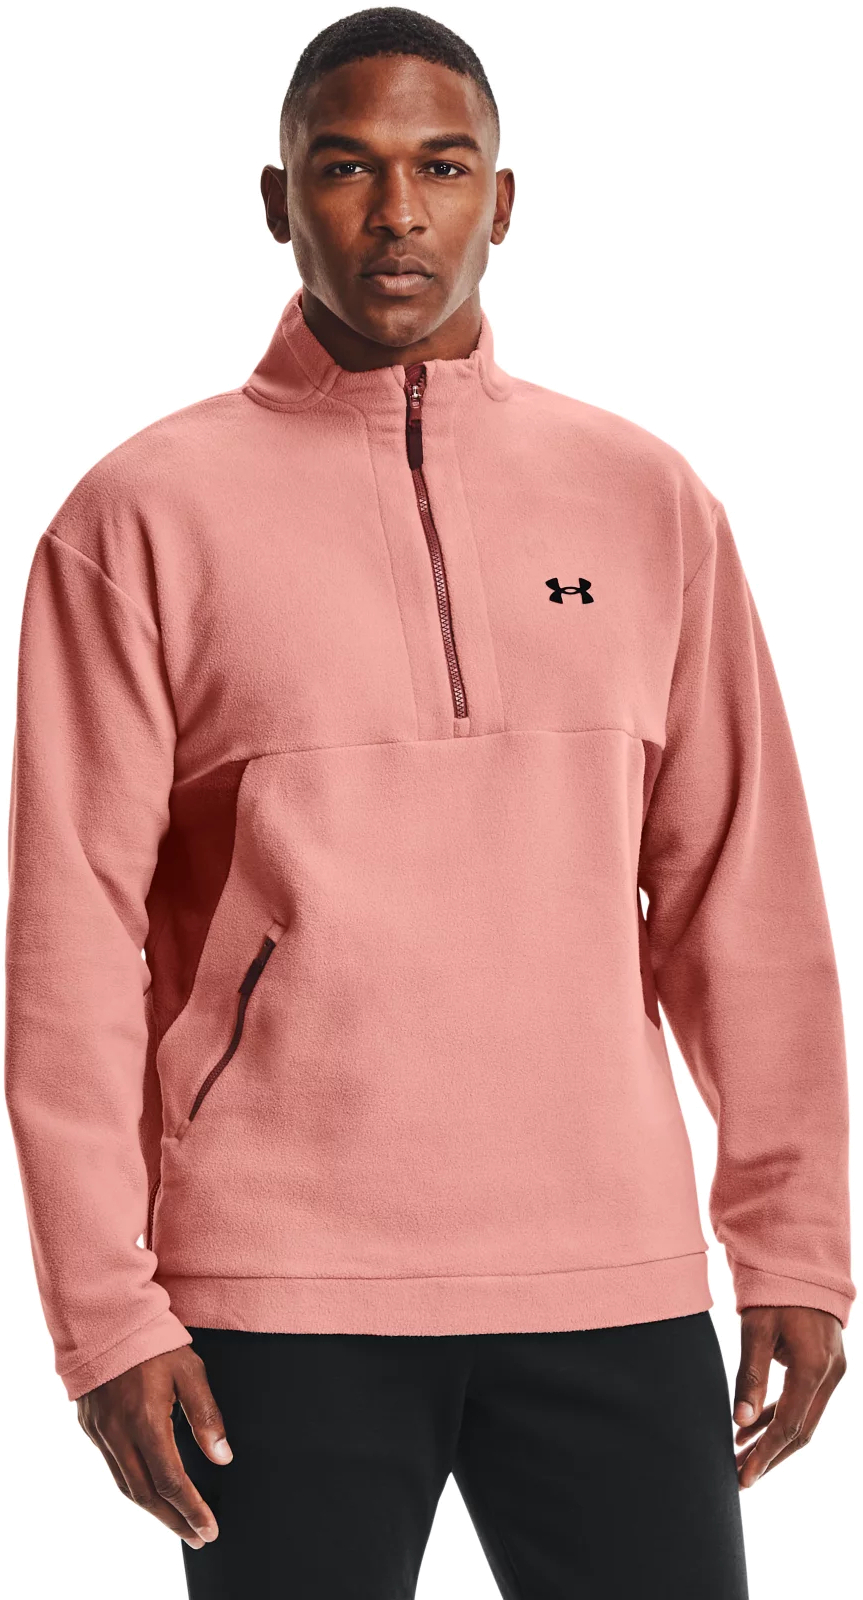 Толстовка мужская Under Armour Recover Fleece 1/4 Zip розовая XL